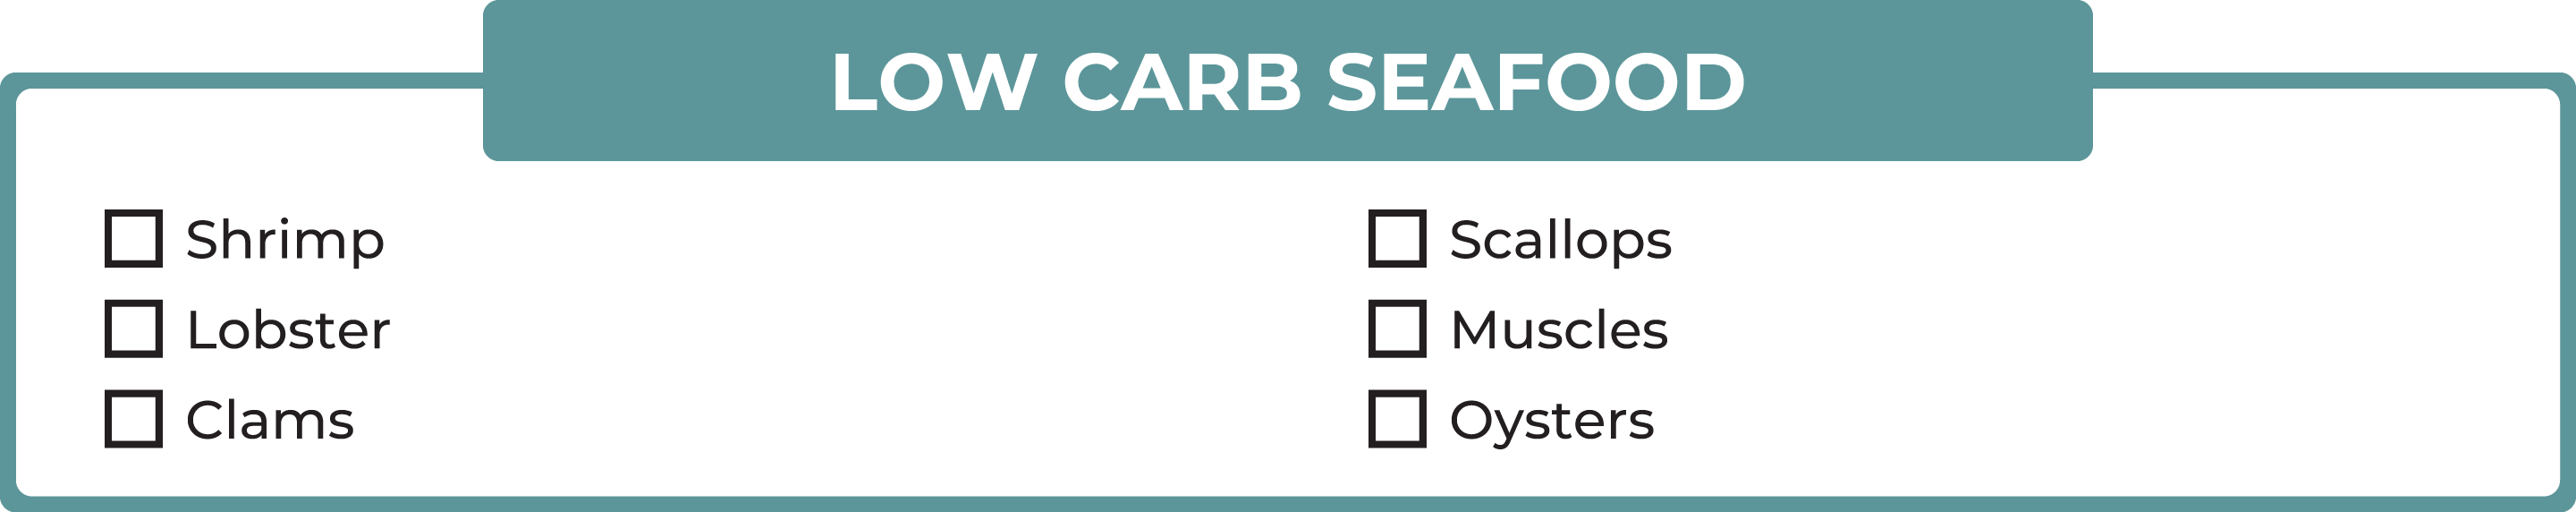 Low-carb seafood